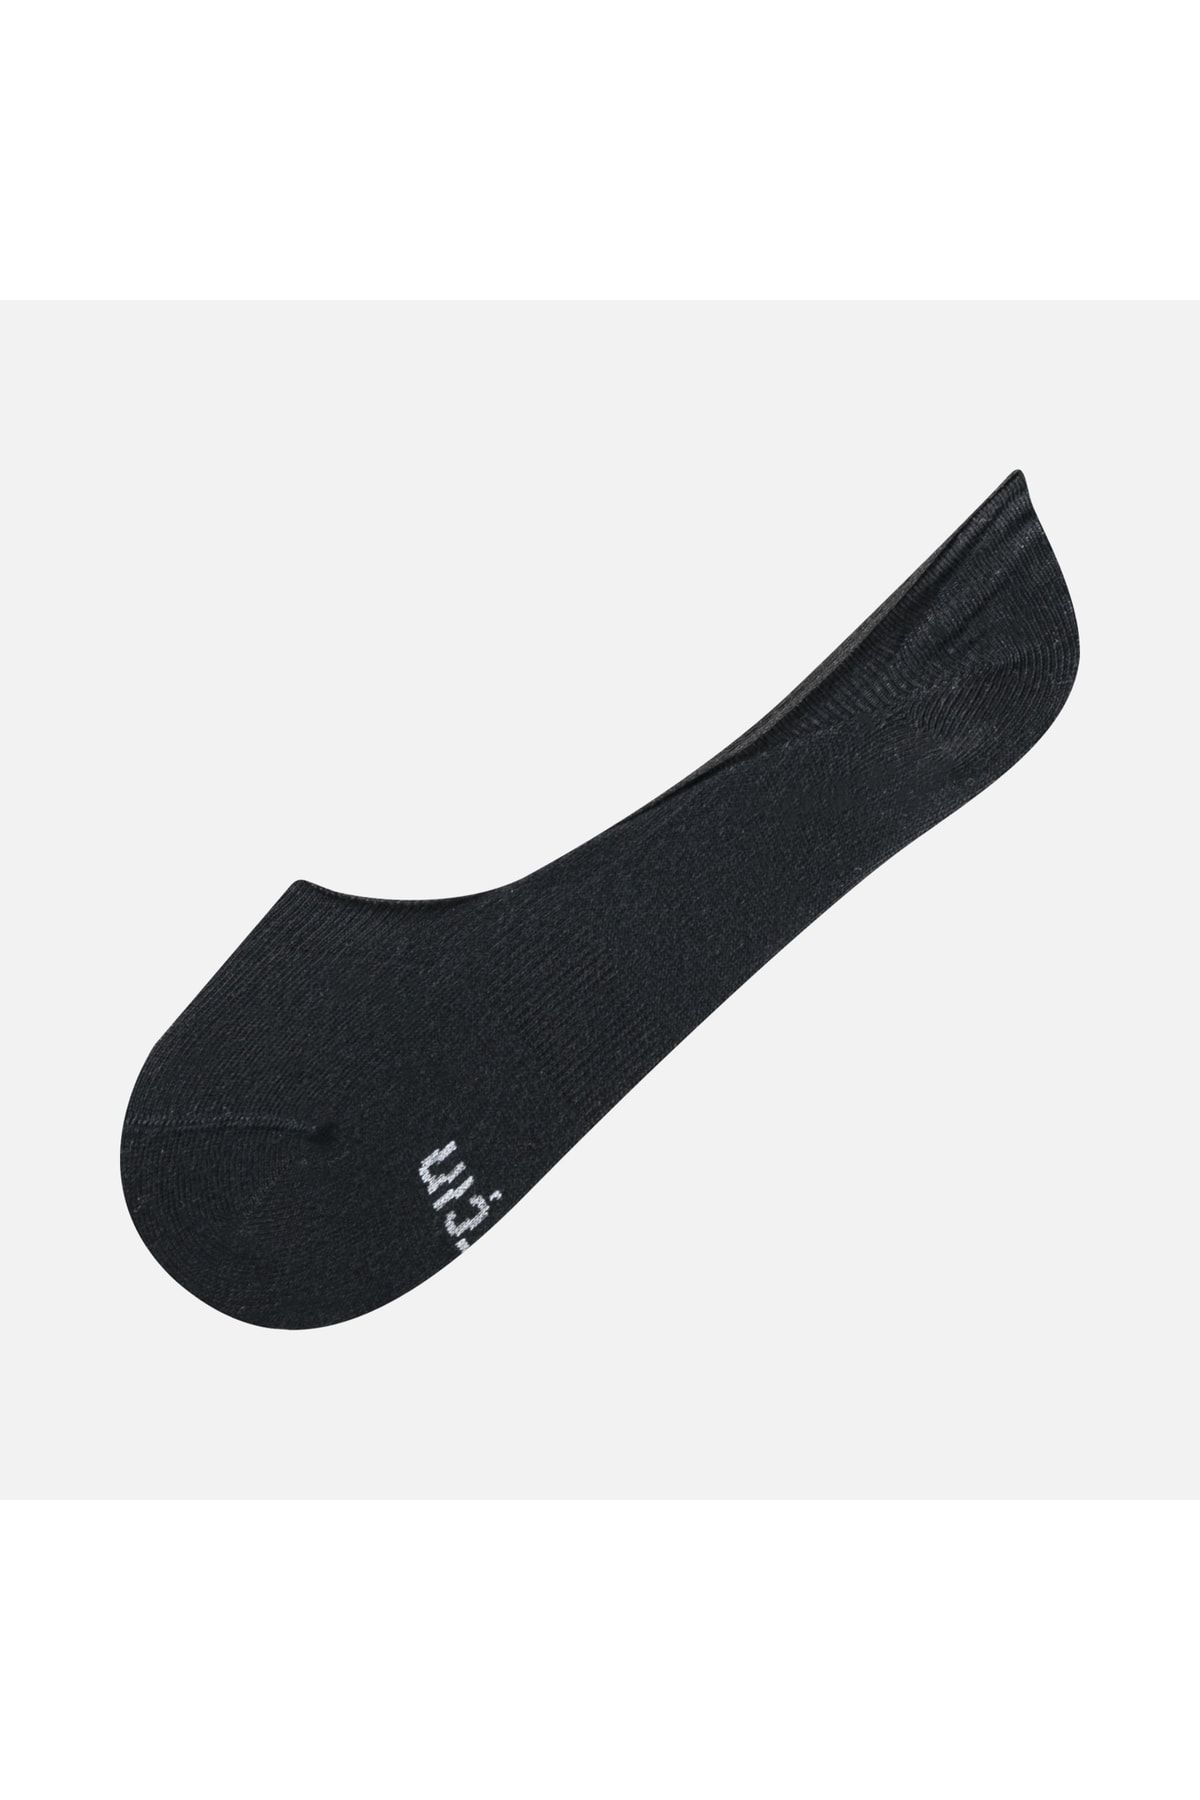 Barçın Basics Slikonlu Unisex Babet Çorap